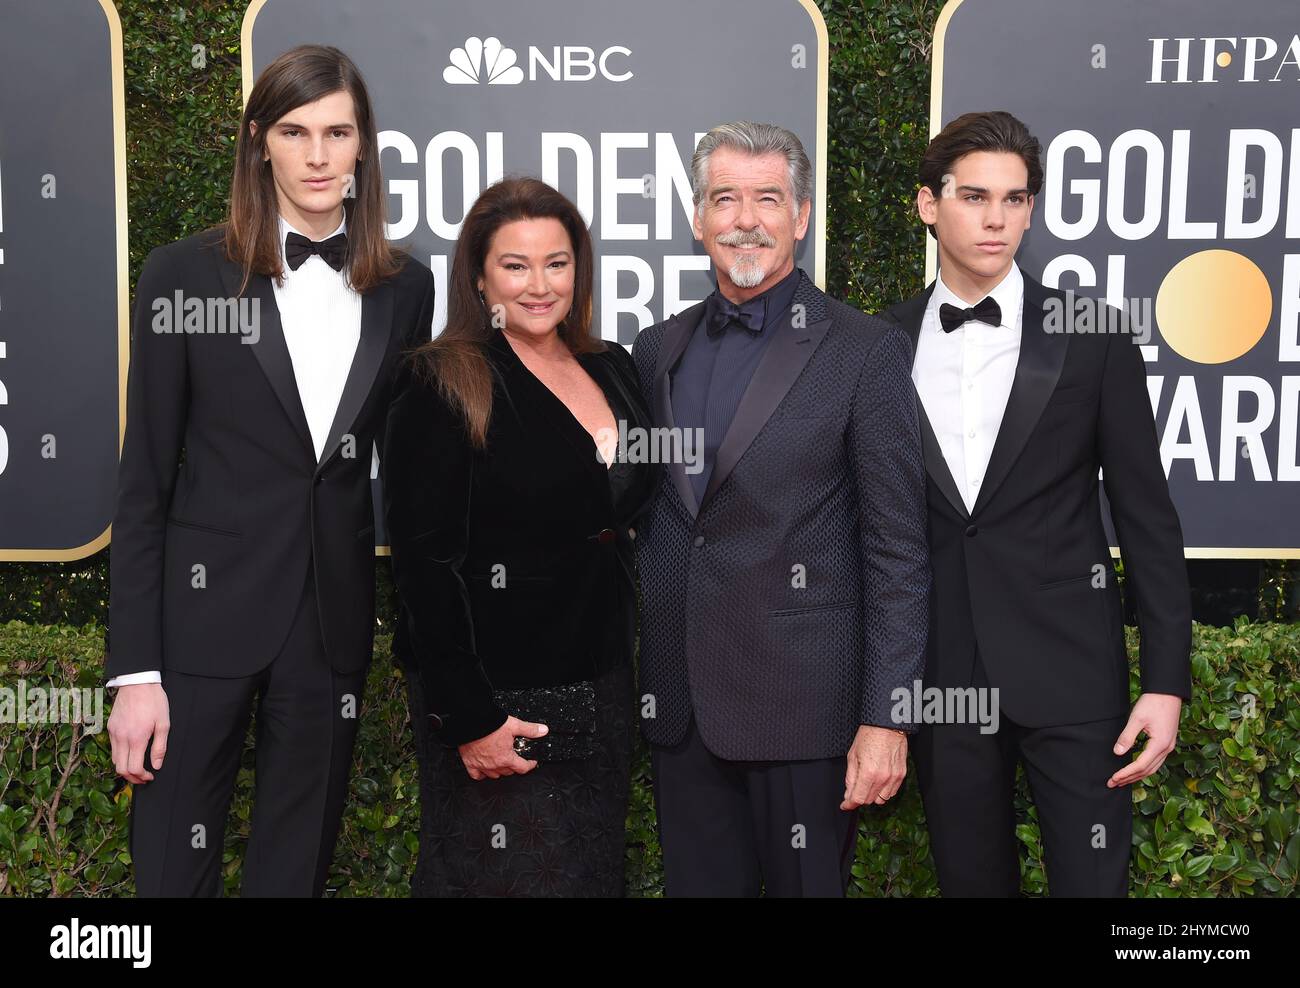 Dylan Brosnan, Keely Shaye Smith, Pierce Brosnan et Paris Brosnan lors des Golden Globe Awards 77th qui se sont tenus à l'hôtel Beverly Hilton le 5 janvier 2020 à Beverly Hills, Los Angeles. Banque D'Images